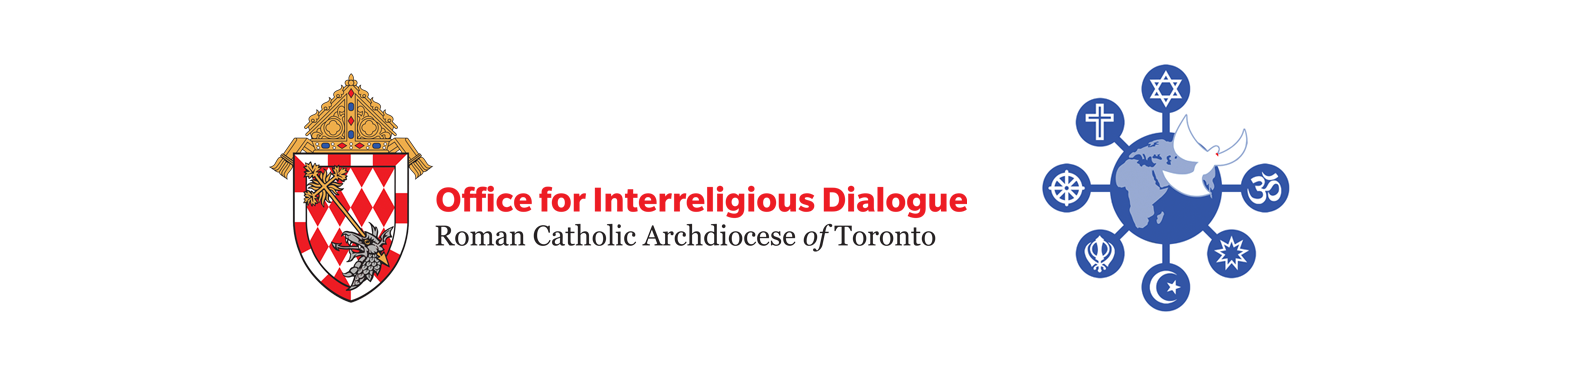 Office for Interreligious Dialogue logo